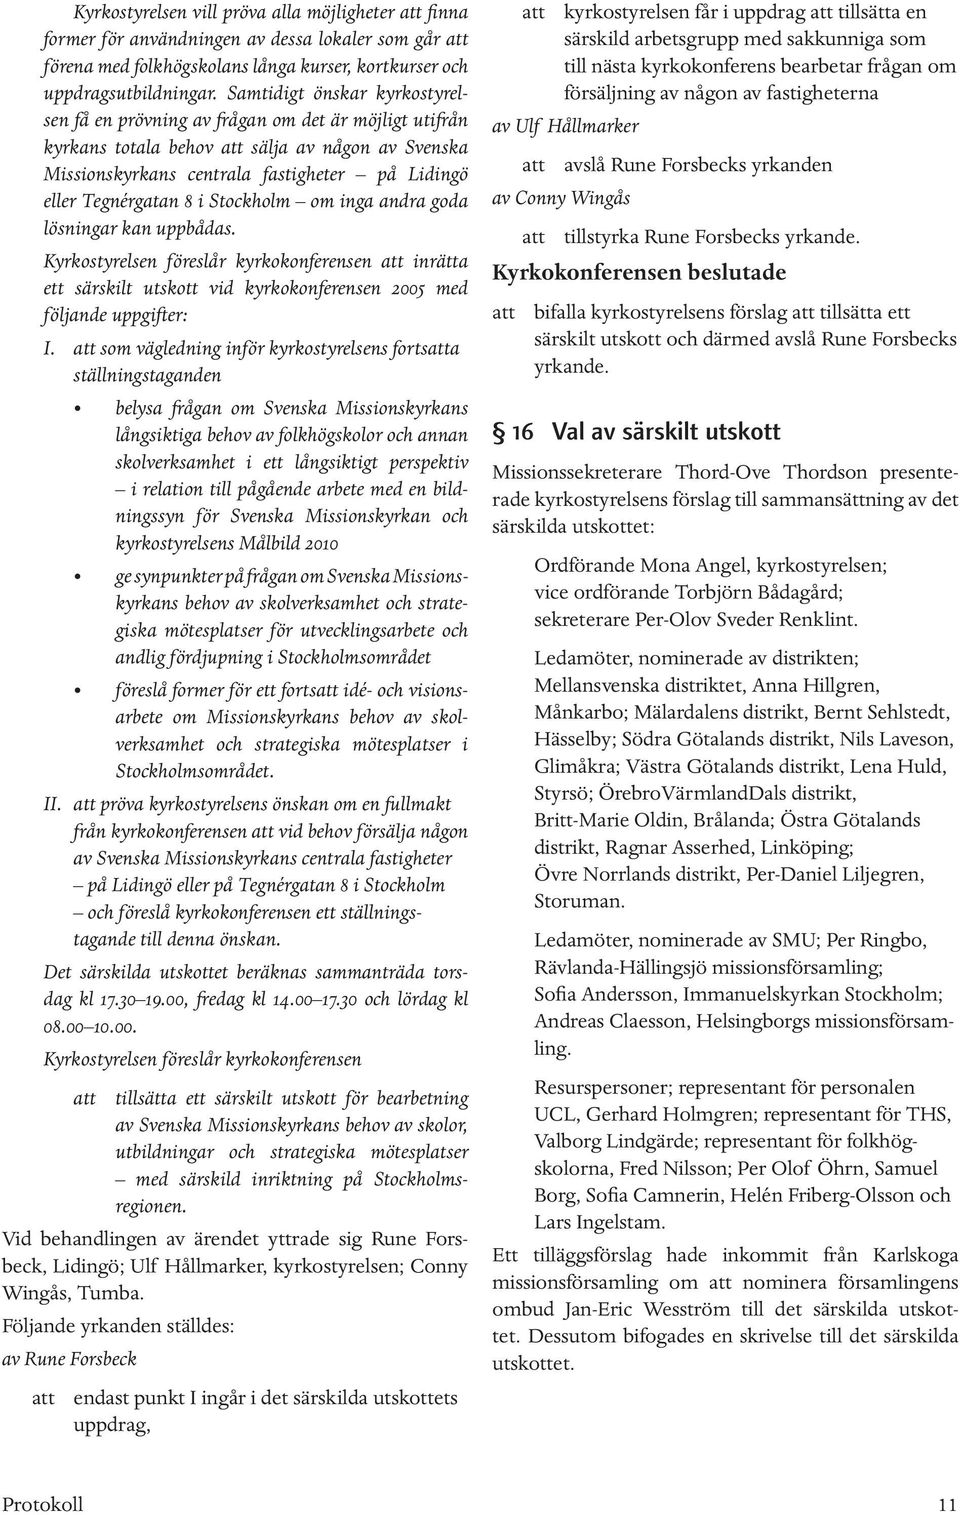 8 i Stockholm om inga andra goda lösningar kan uppbådas. Kyrkostyrelsen föreslår kyrkokonferensen att inrätta ett särskilt utskott vid kyrkokonferensen 2005 med följande uppgifter: I.